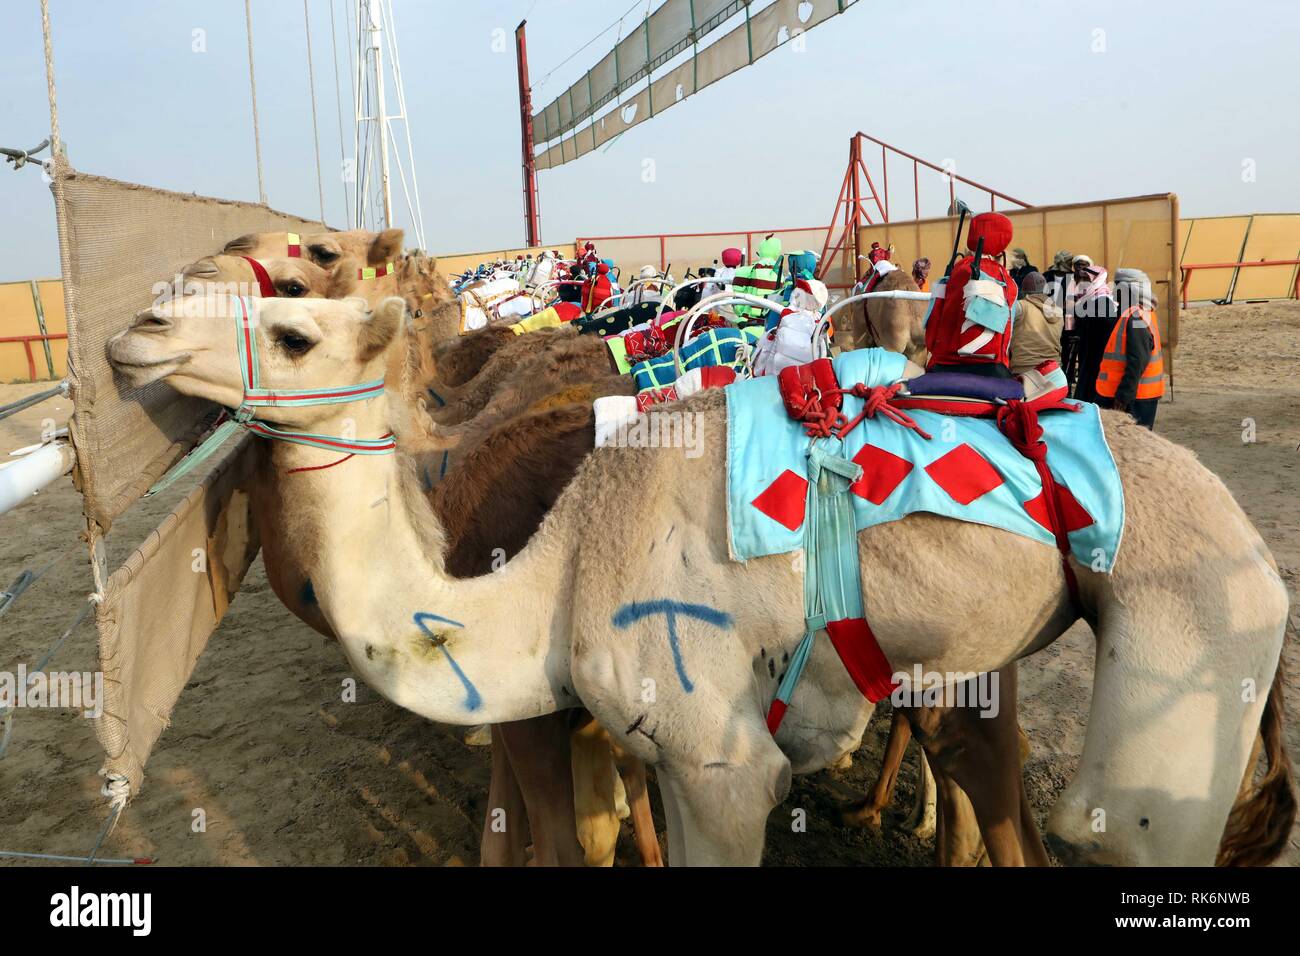 Le Gouvernorat d'Al Ahmadi, le Koweït. Feb 9, 2019. Course de chameaux attendre à participer avant le Koweït au 19ème tournoi de courses de chameaux au Koweït Camel Racing Club dans le gouvernorat d'Al-Ahmadi, le Koweït, le 9 février 2019. Crédit : Joseph Shagra/Xinhua/Alamy Live News Banque D'Images